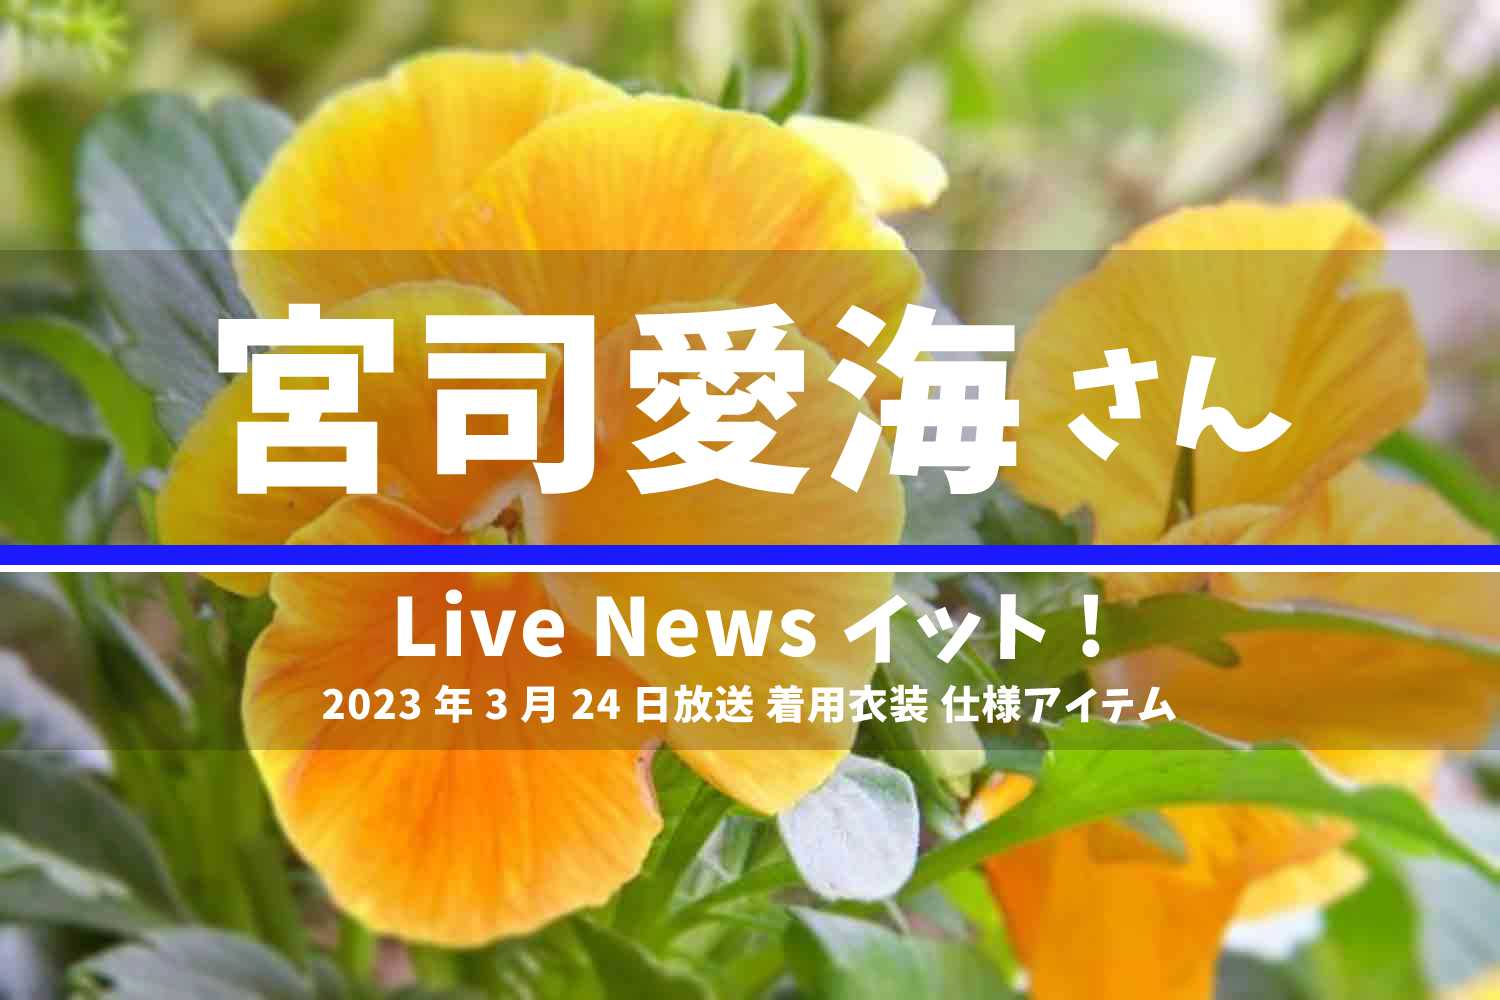 Live News イット! 宮司愛海さん 番組 衣装 2023年3月24日放送